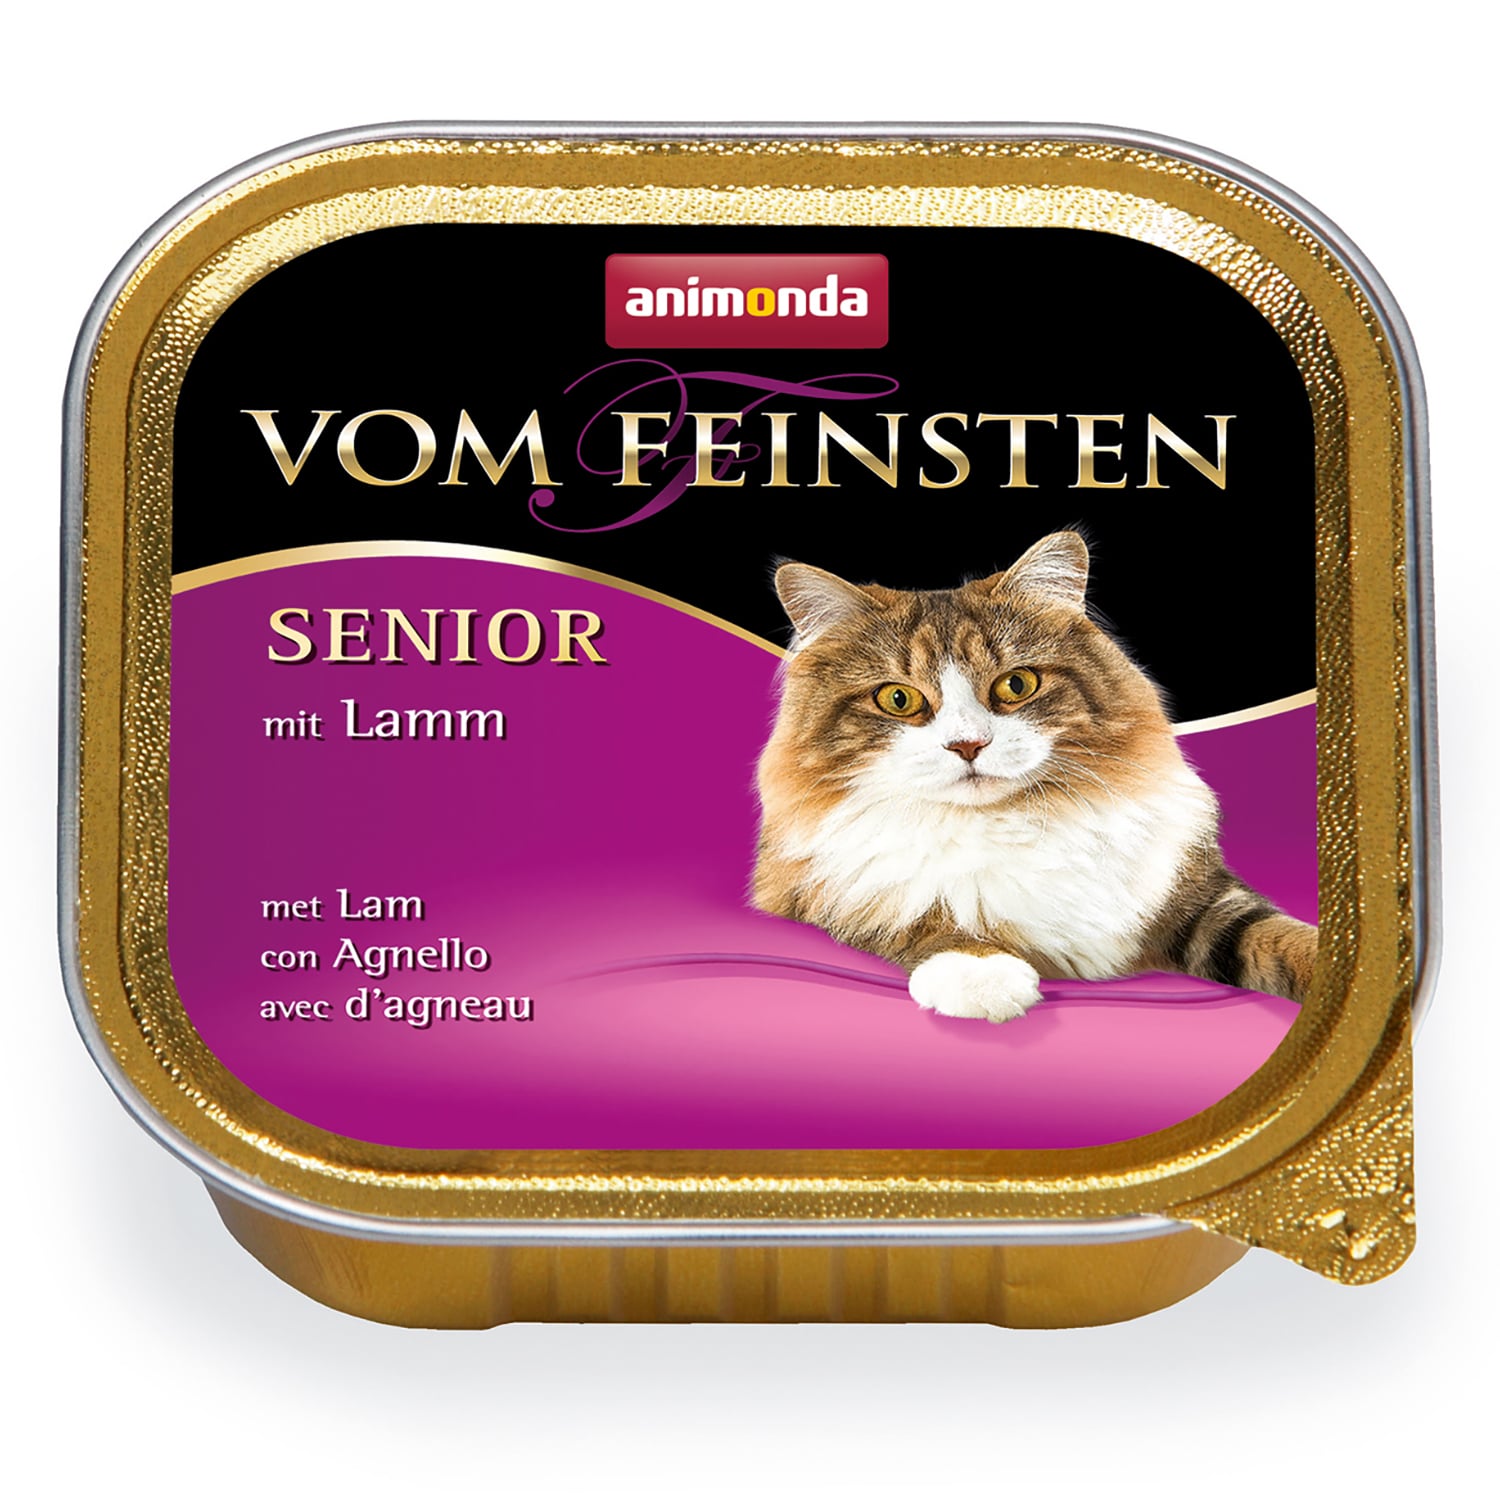 Vom Feinsten Senior консервы для кошек старше 7 лет, с ягненком, Animonda